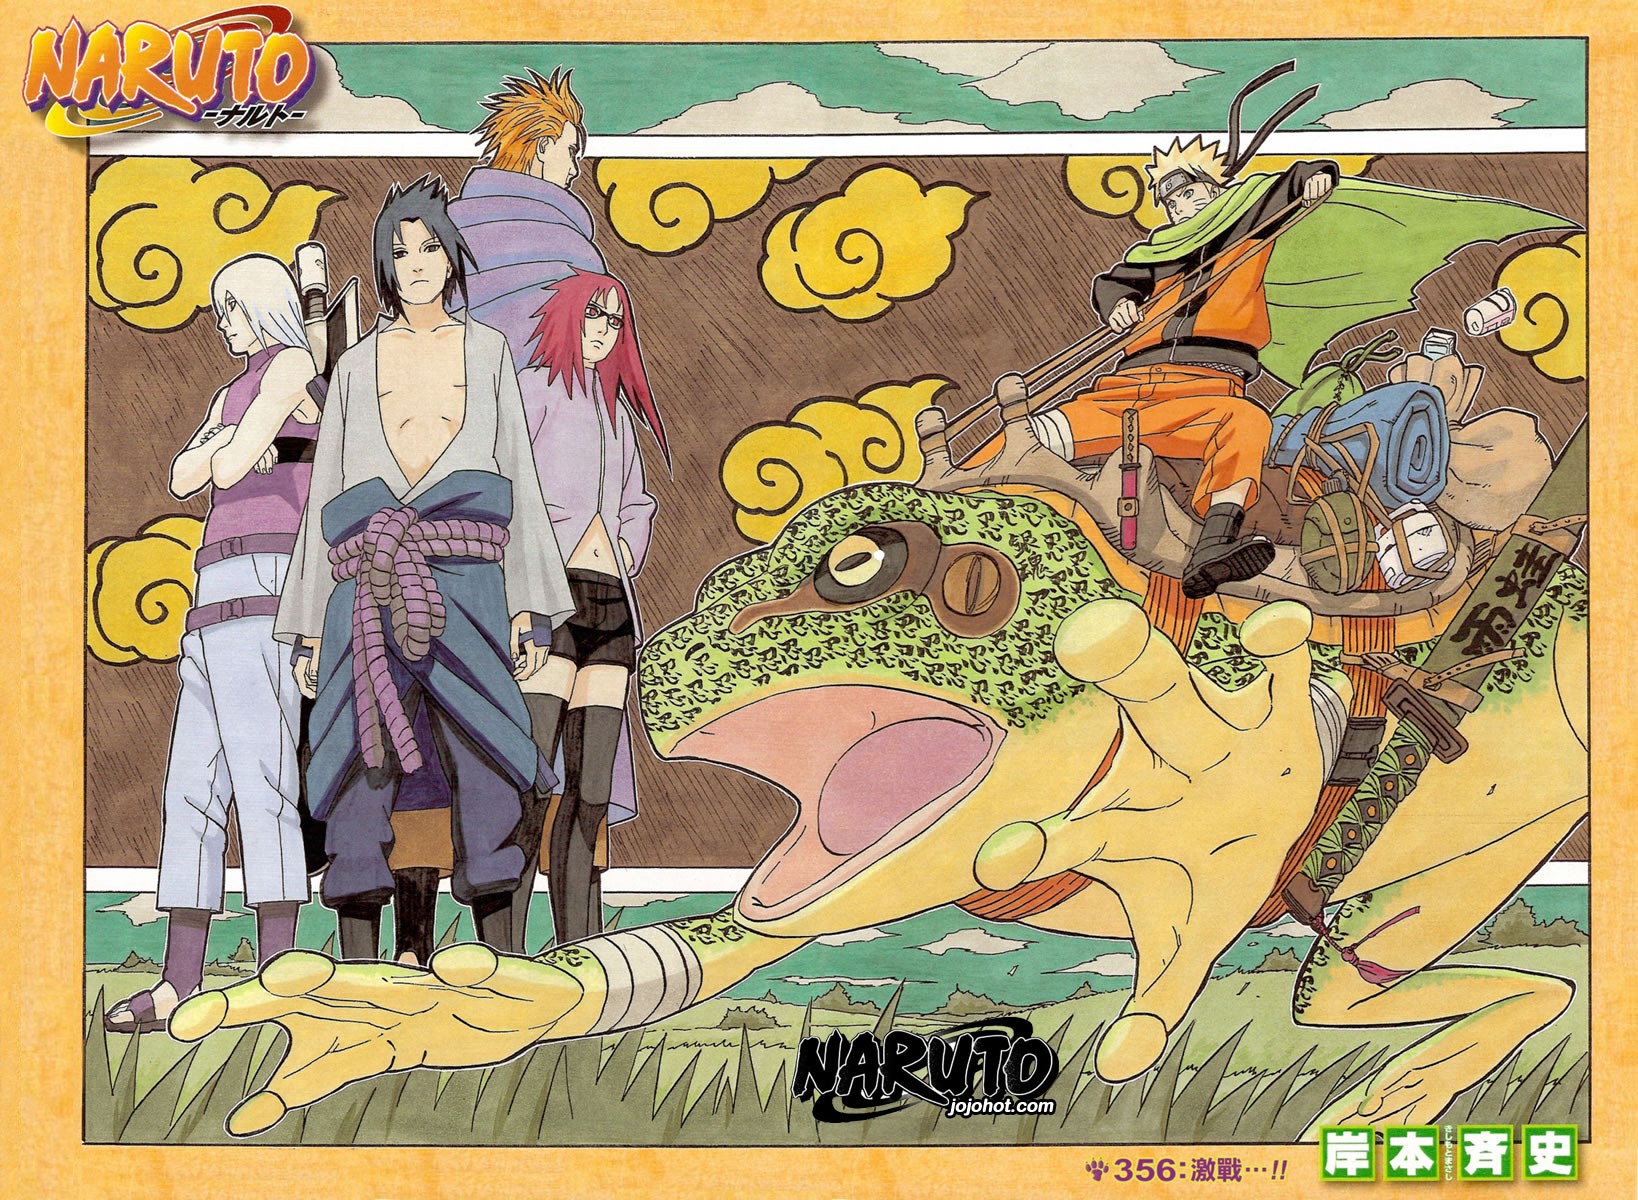 Anime 1638x1200 Naruto Shippuden Uchiha Sasuke manga Uzumaki Naruto Hozuki Suigetsu Juugo Karin anime